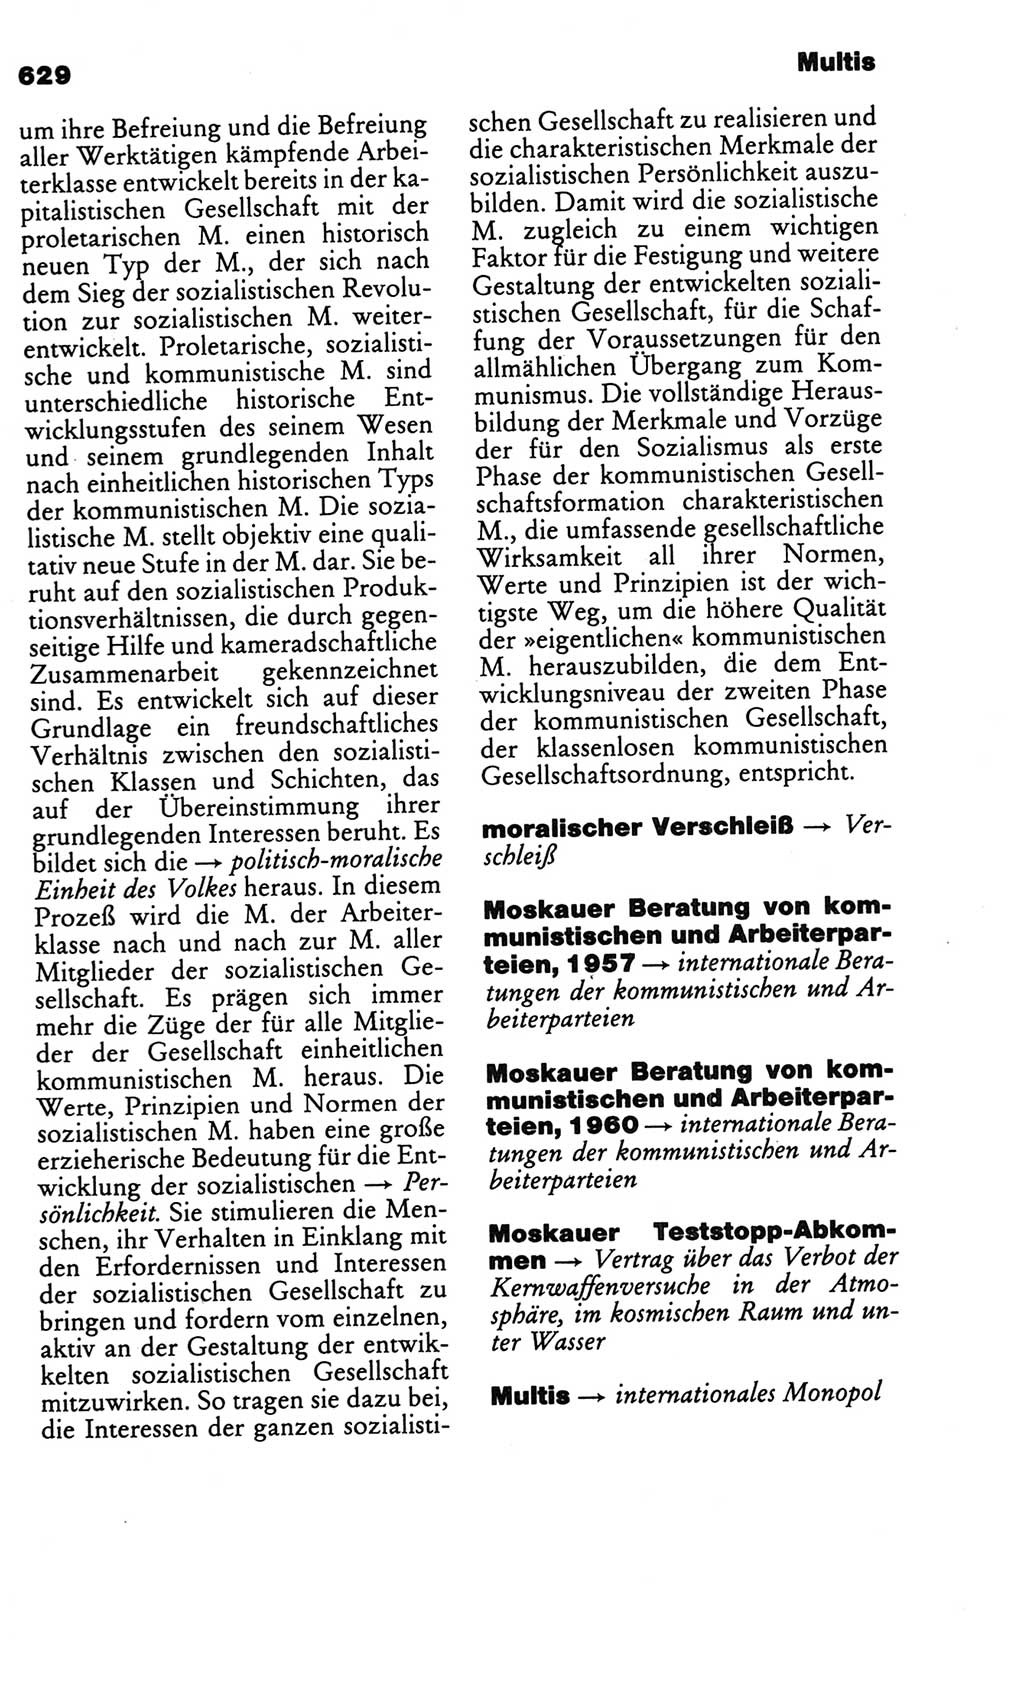 Kleines politisches Wörterbuch [Deutsche Demokratische Republik (DDR)] 1986, Seite 629 (Kl. pol. Wb. DDR 1986, S. 629)